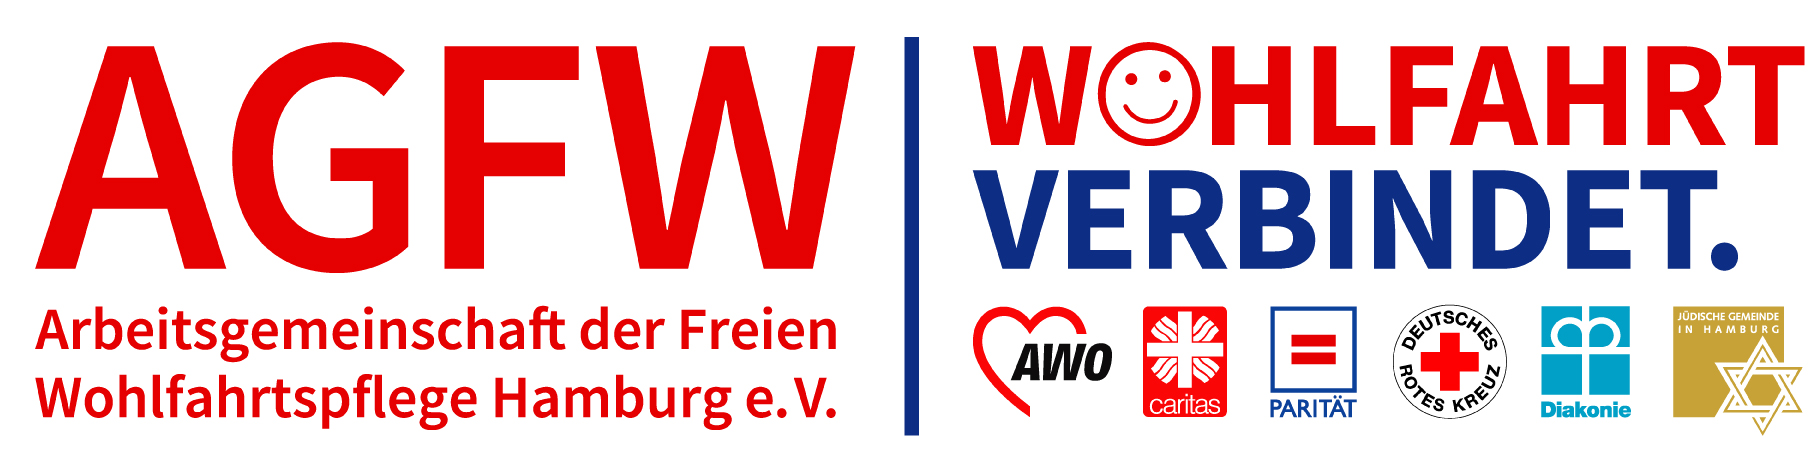 Logo AGFW (Arbeitsgemeinschaft der Freien Wohlfahrtspflege Hamburg e.V)